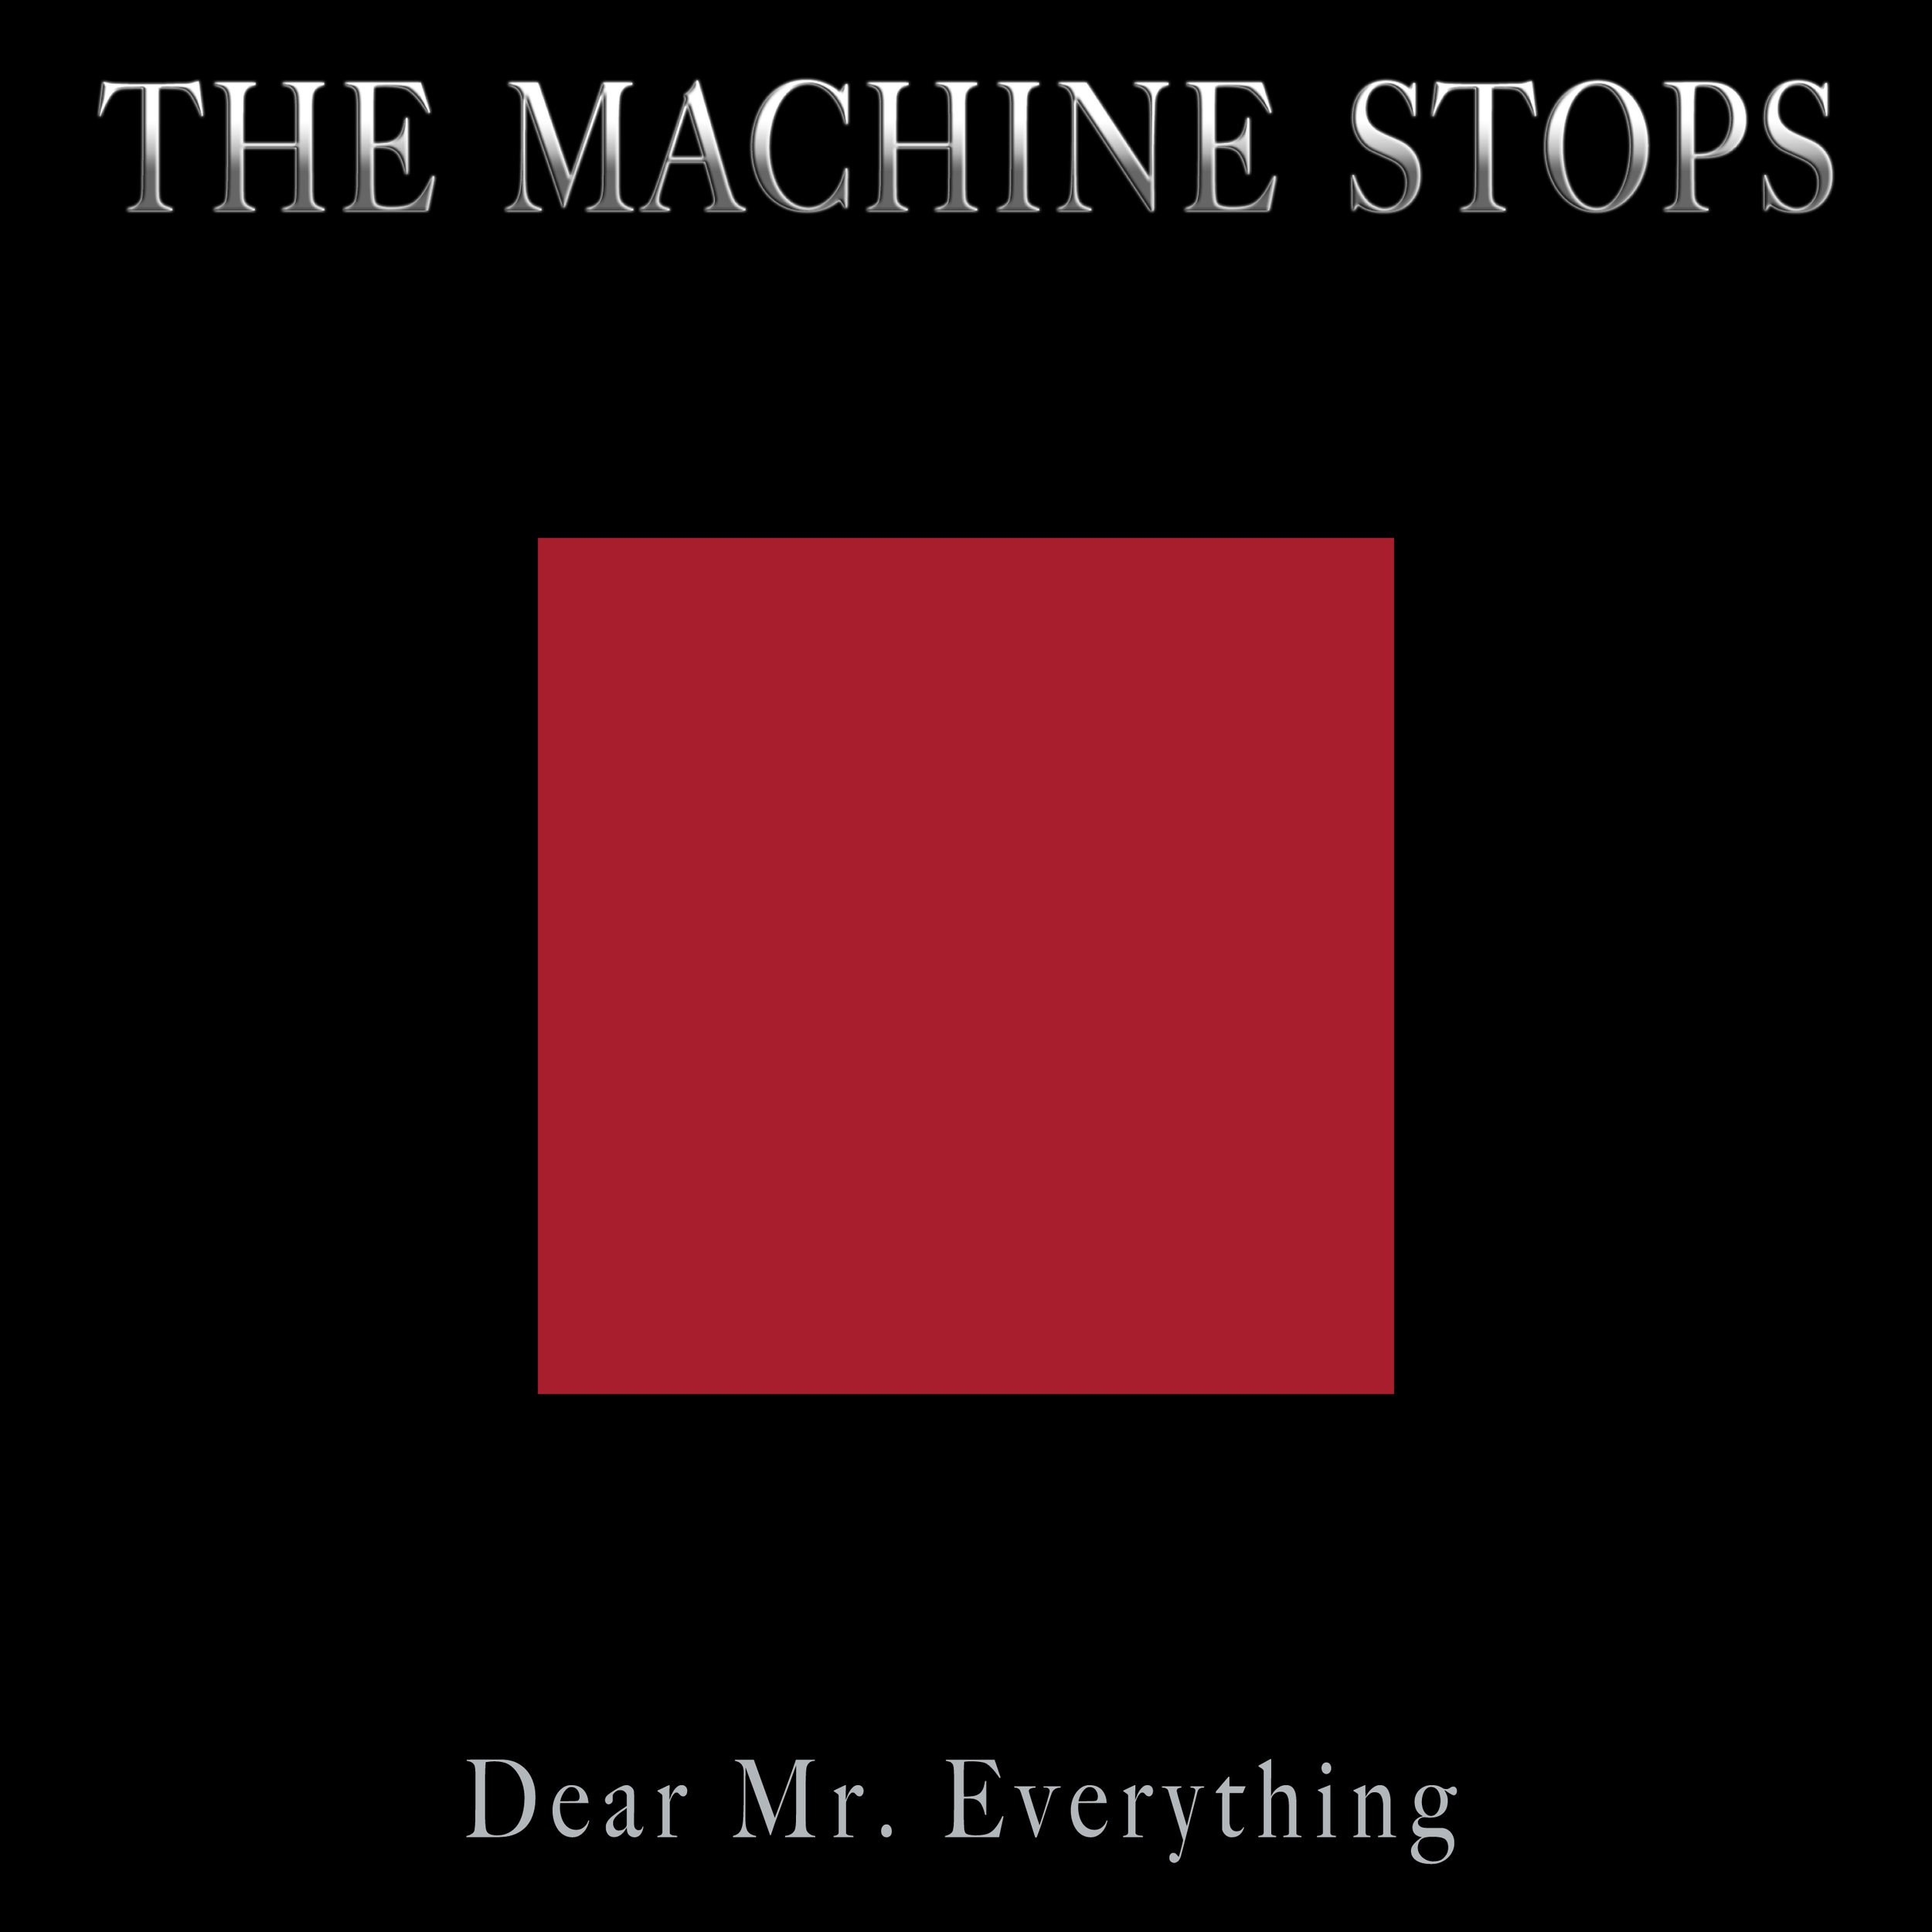 "Dear Mr. Everything"